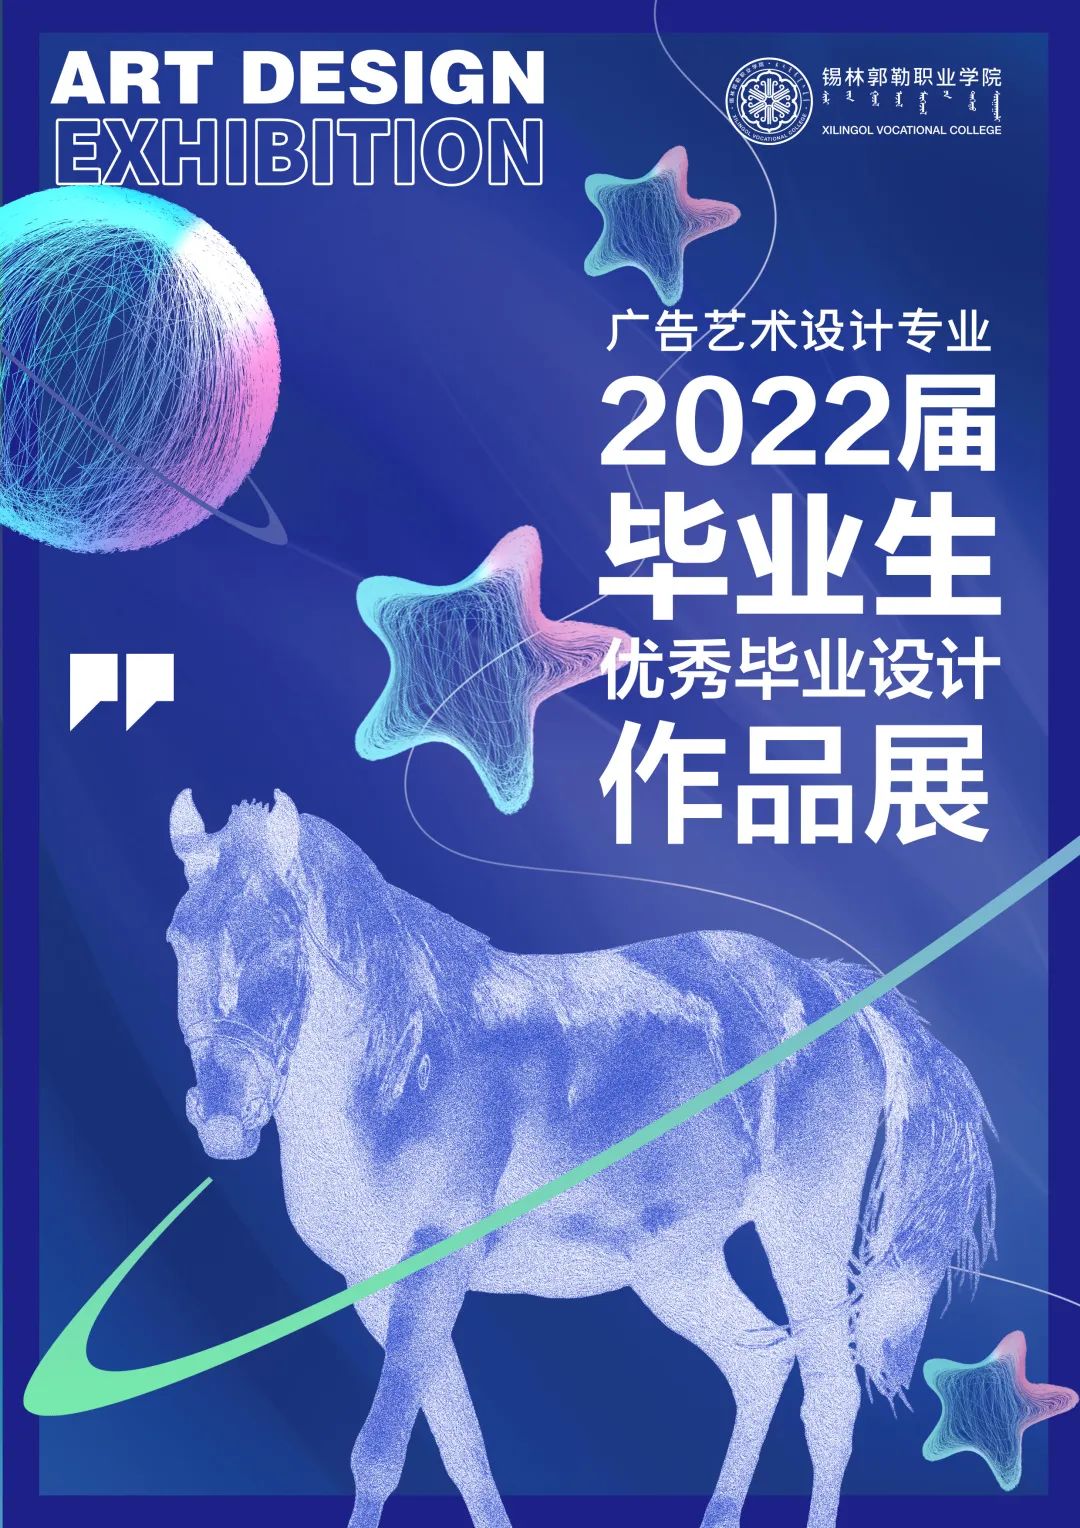 锡林郭勒职业学院蒙古语言文化与艺术系广告艺术设计专业2022届优秀毕业设计作品展